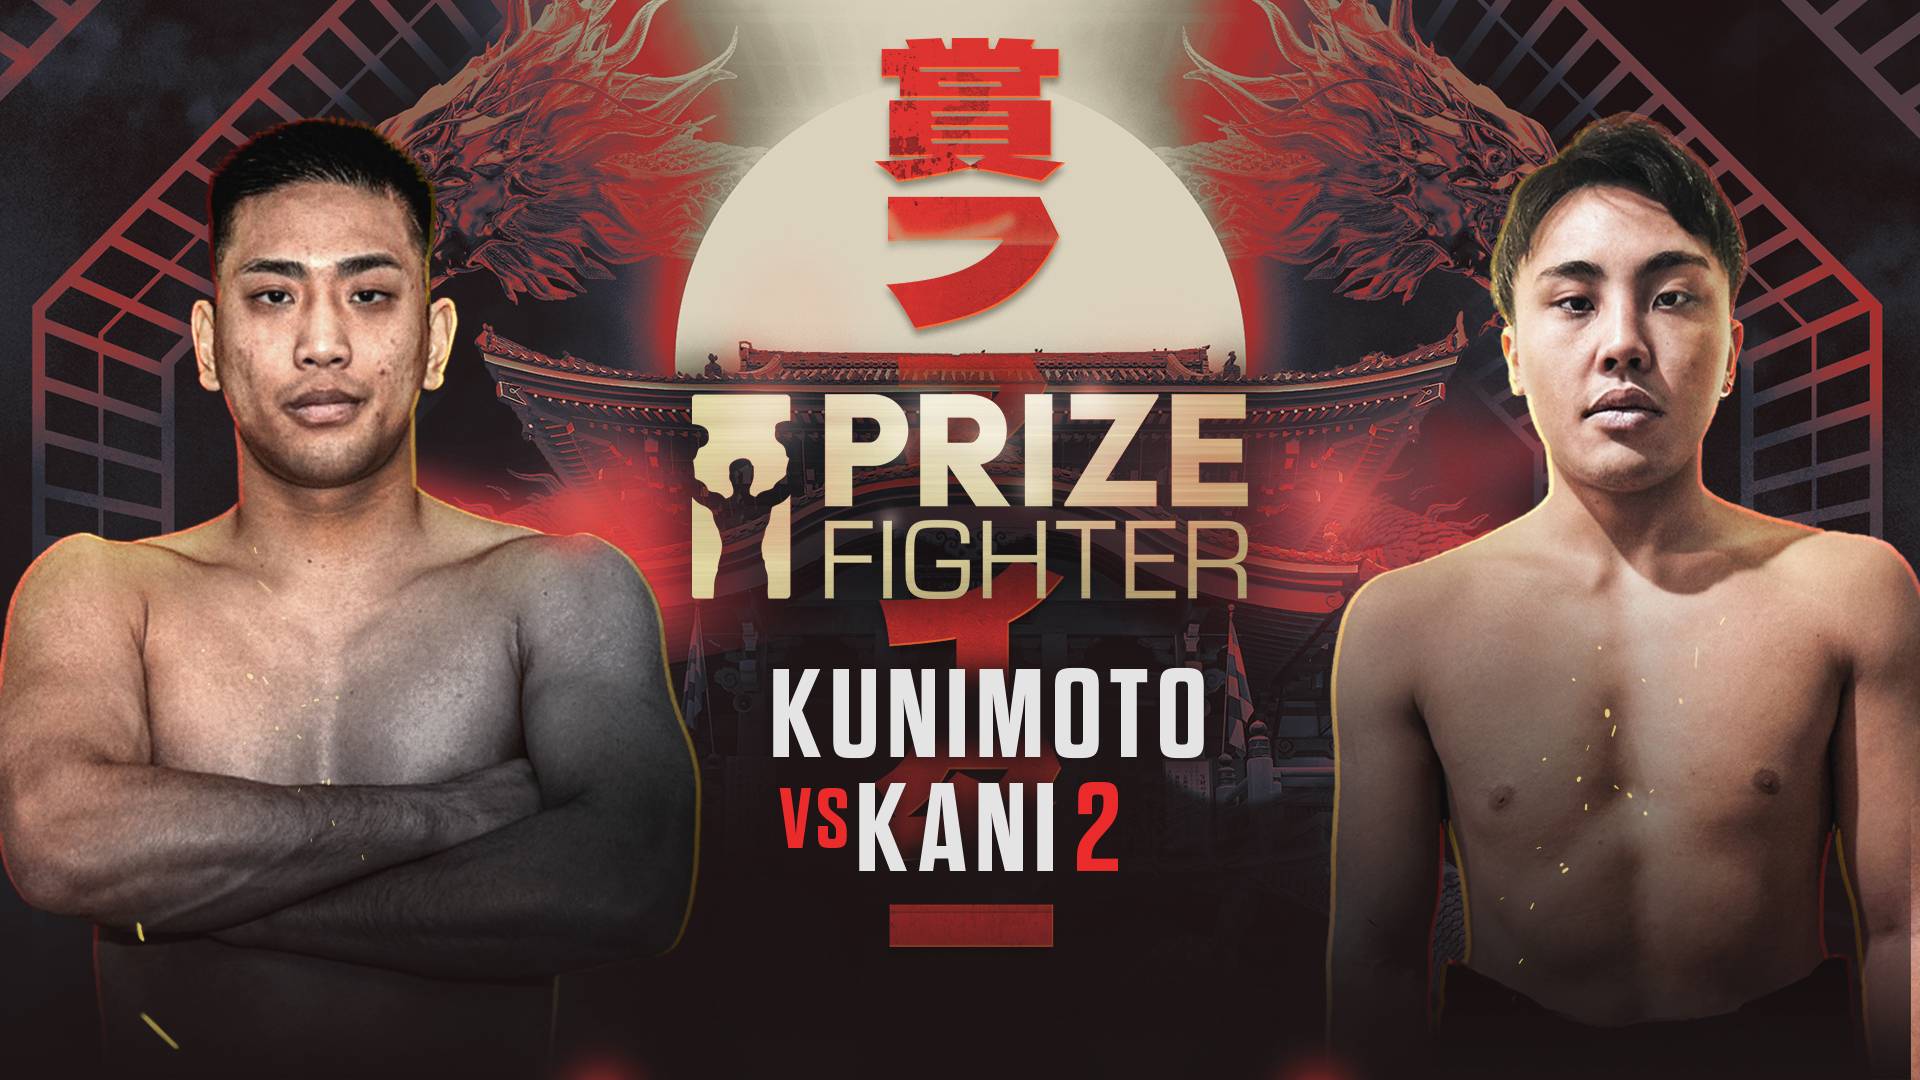 Kunimoto vs Kani 2